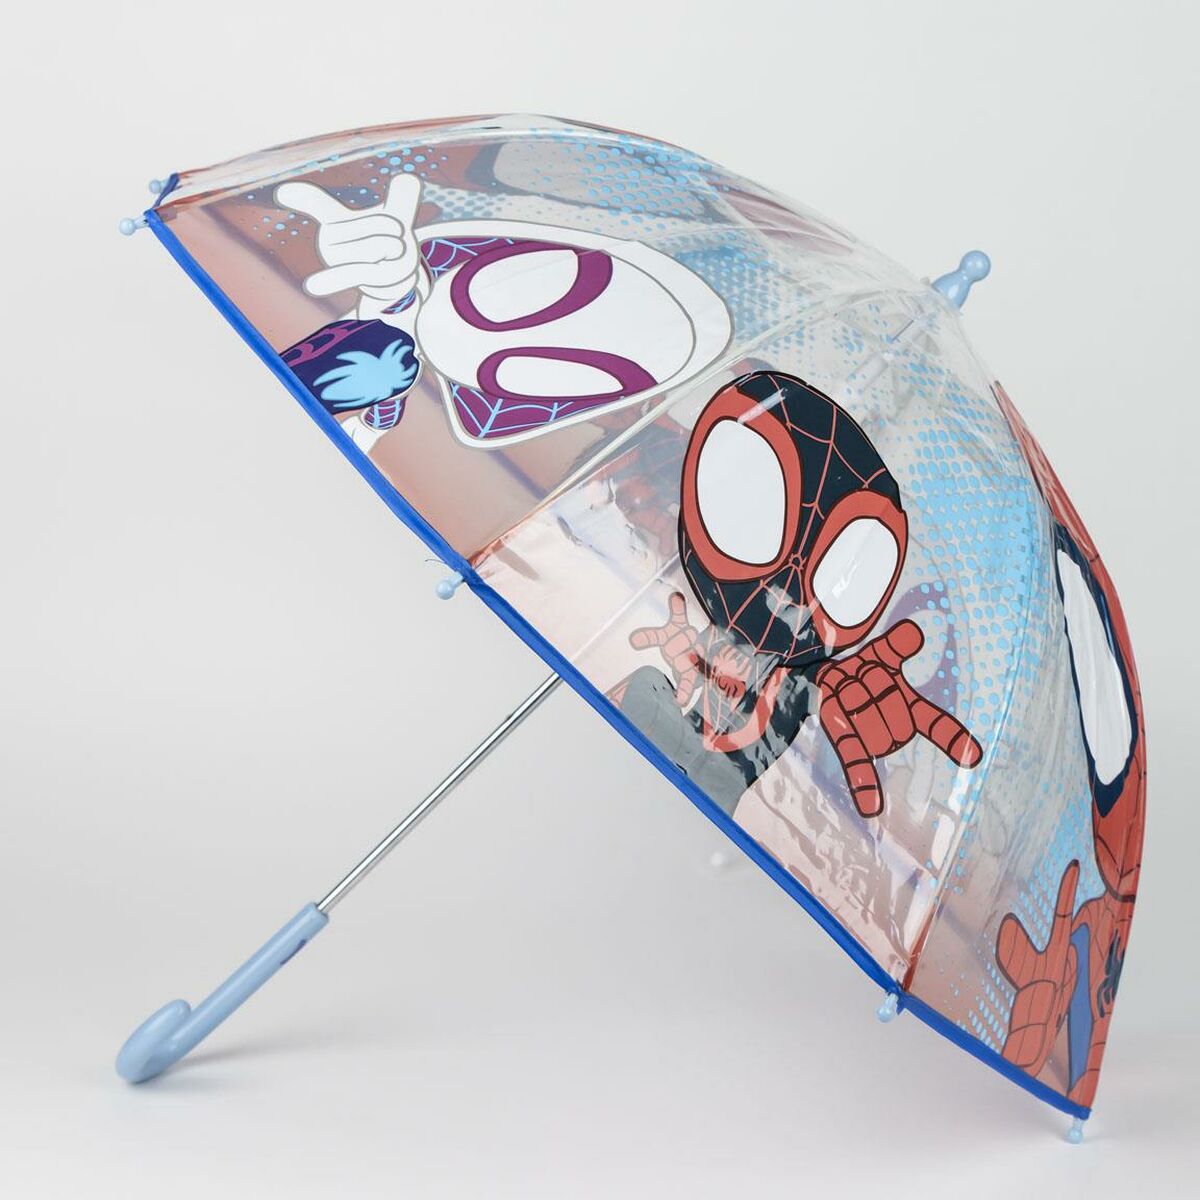 Regenschirm Spidey Rot PoE 45 cm Für Kinder